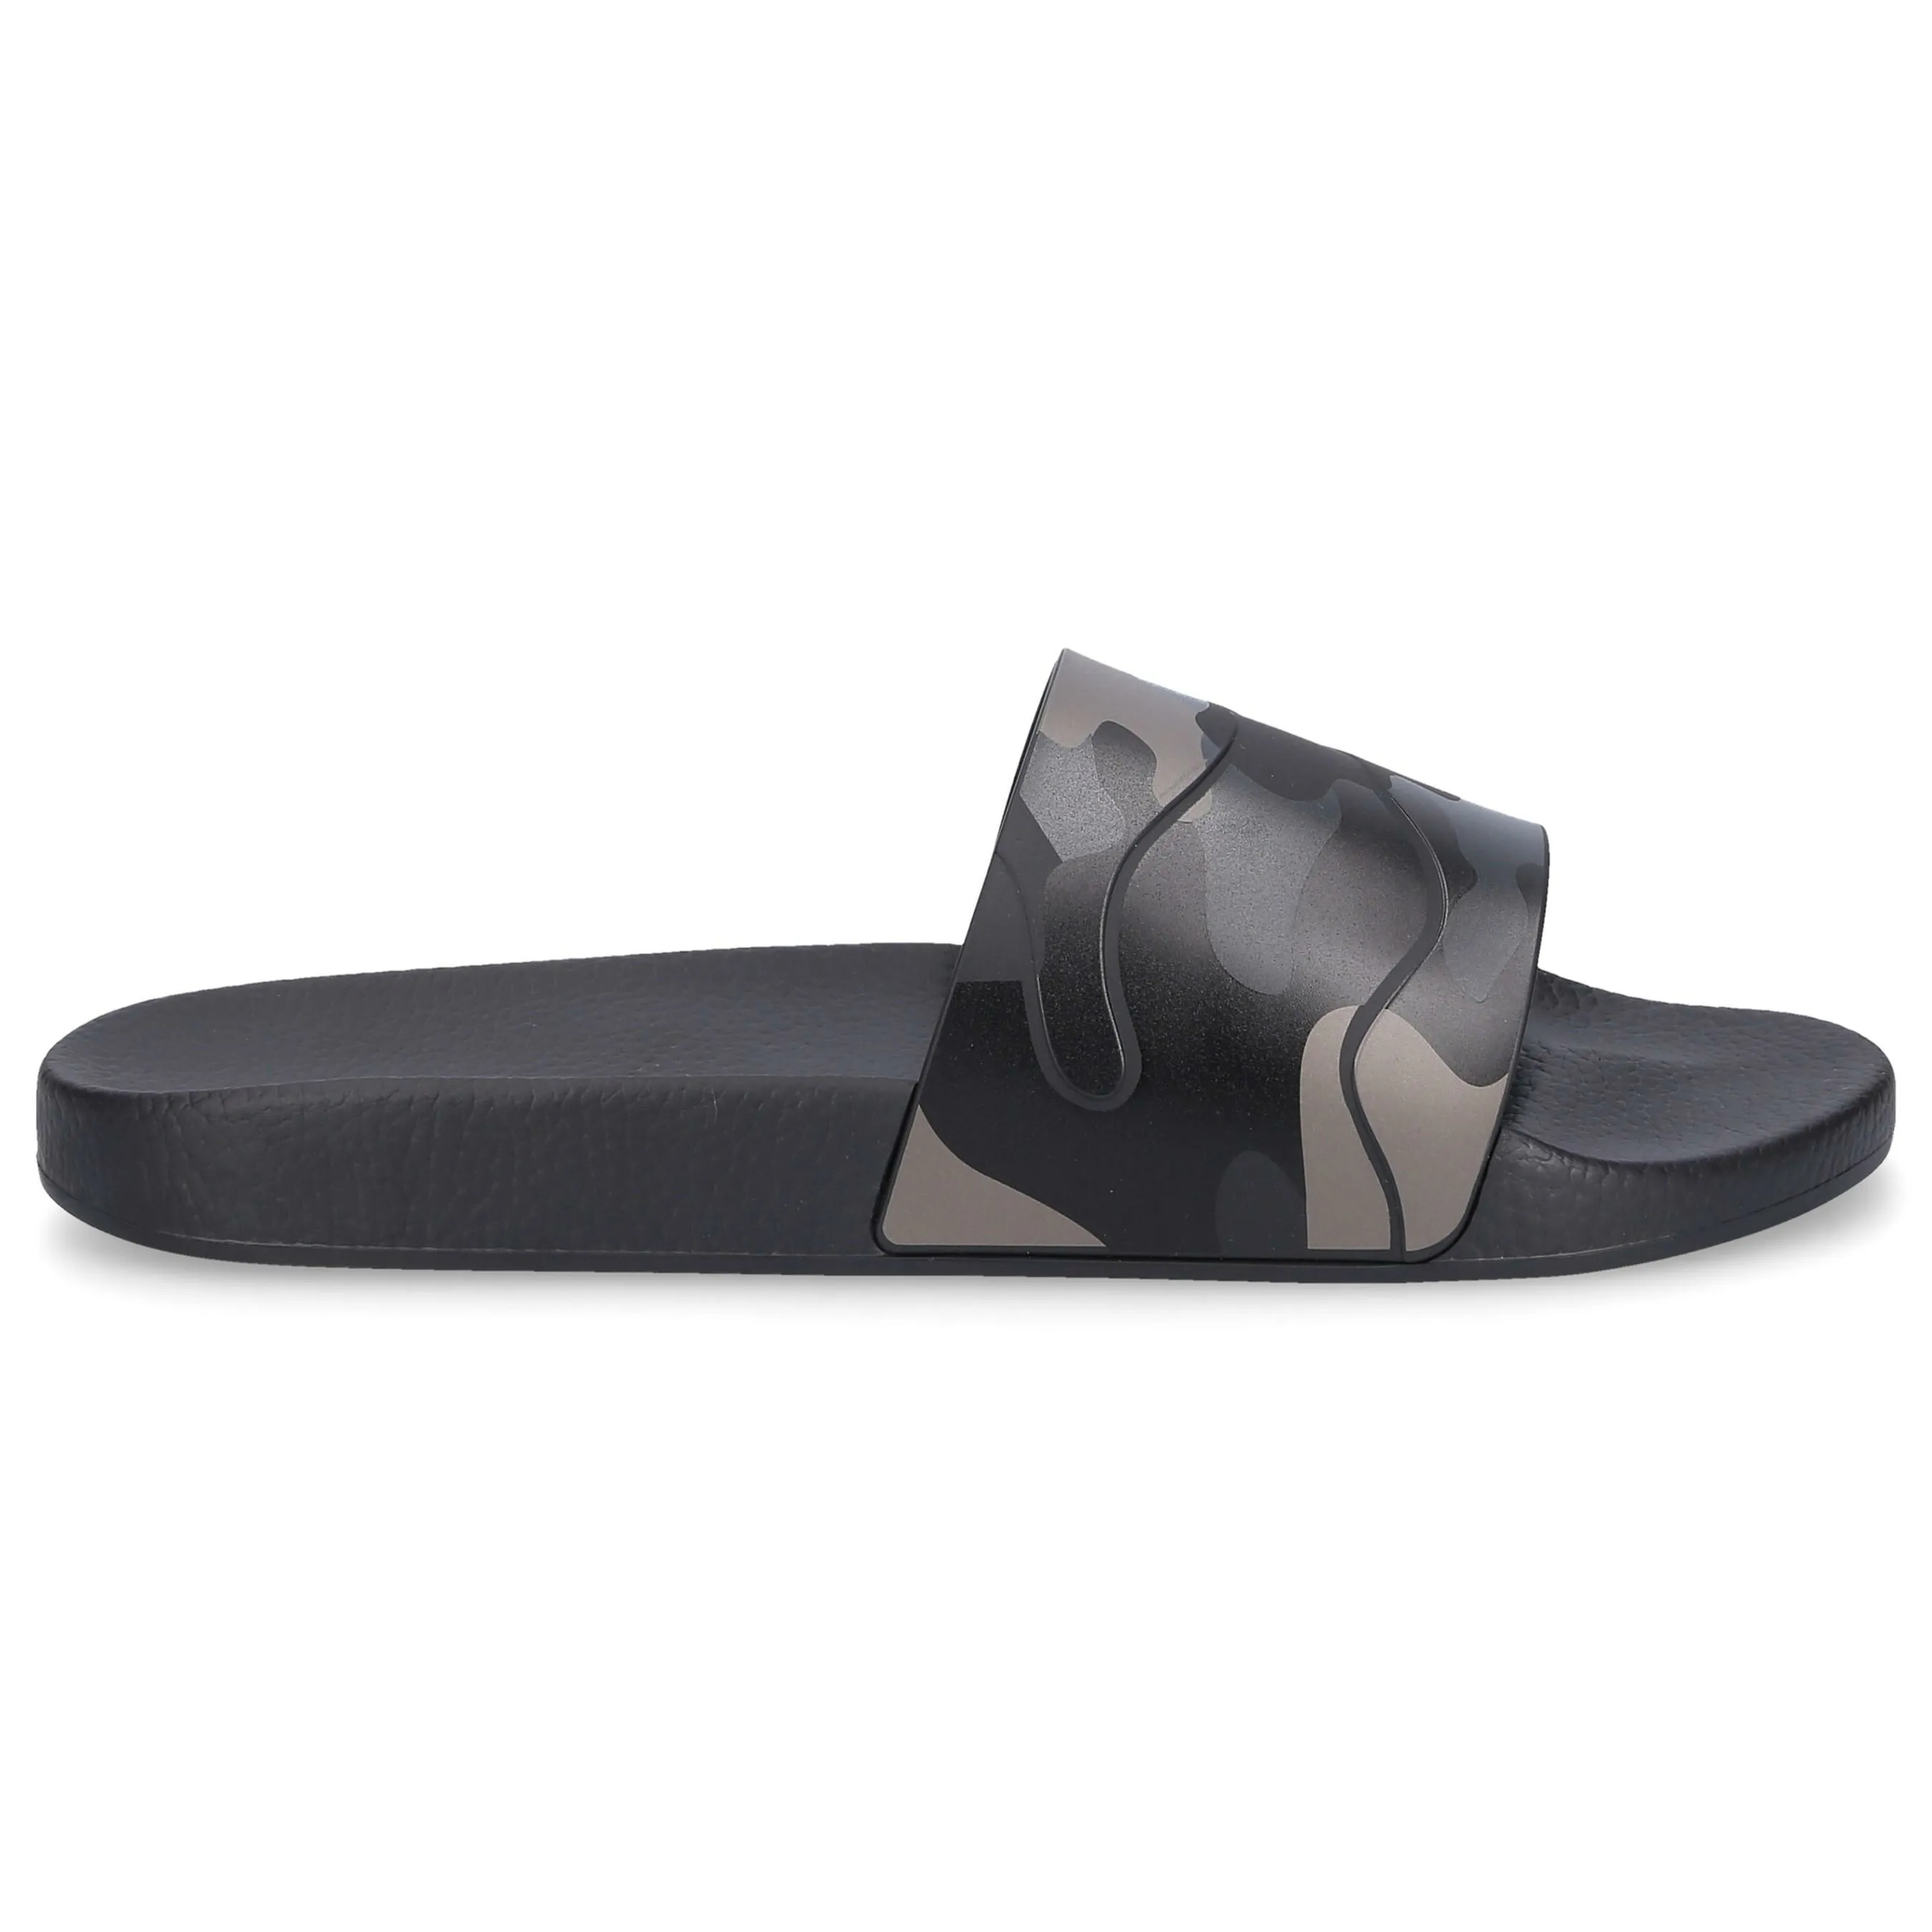 White DSquared² Rubber Slide Sandals in Nero Mens Shoes Sandals for Men slides and flip flops Sandals and flip-flops 